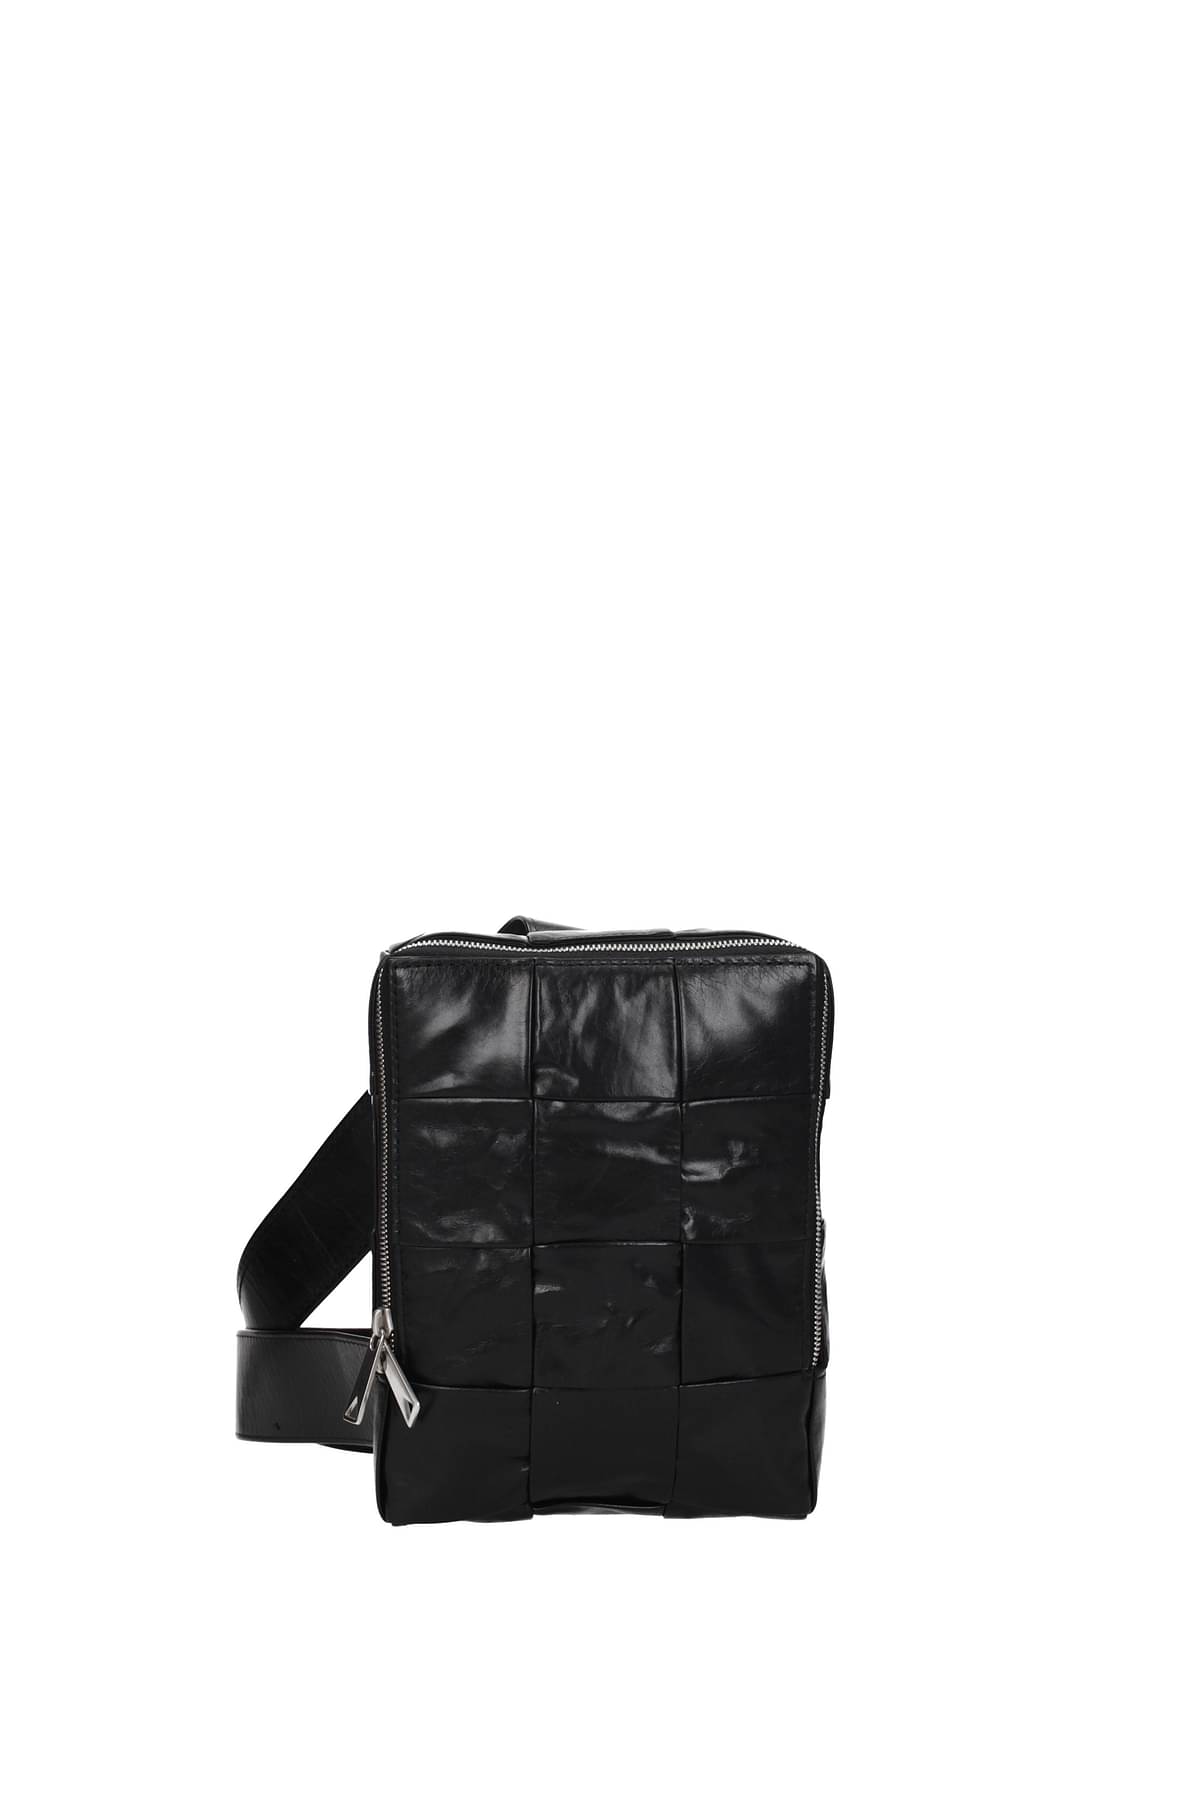 Bottega Veneta | Small Cassette Leather Crossbody Bag | Green Tu